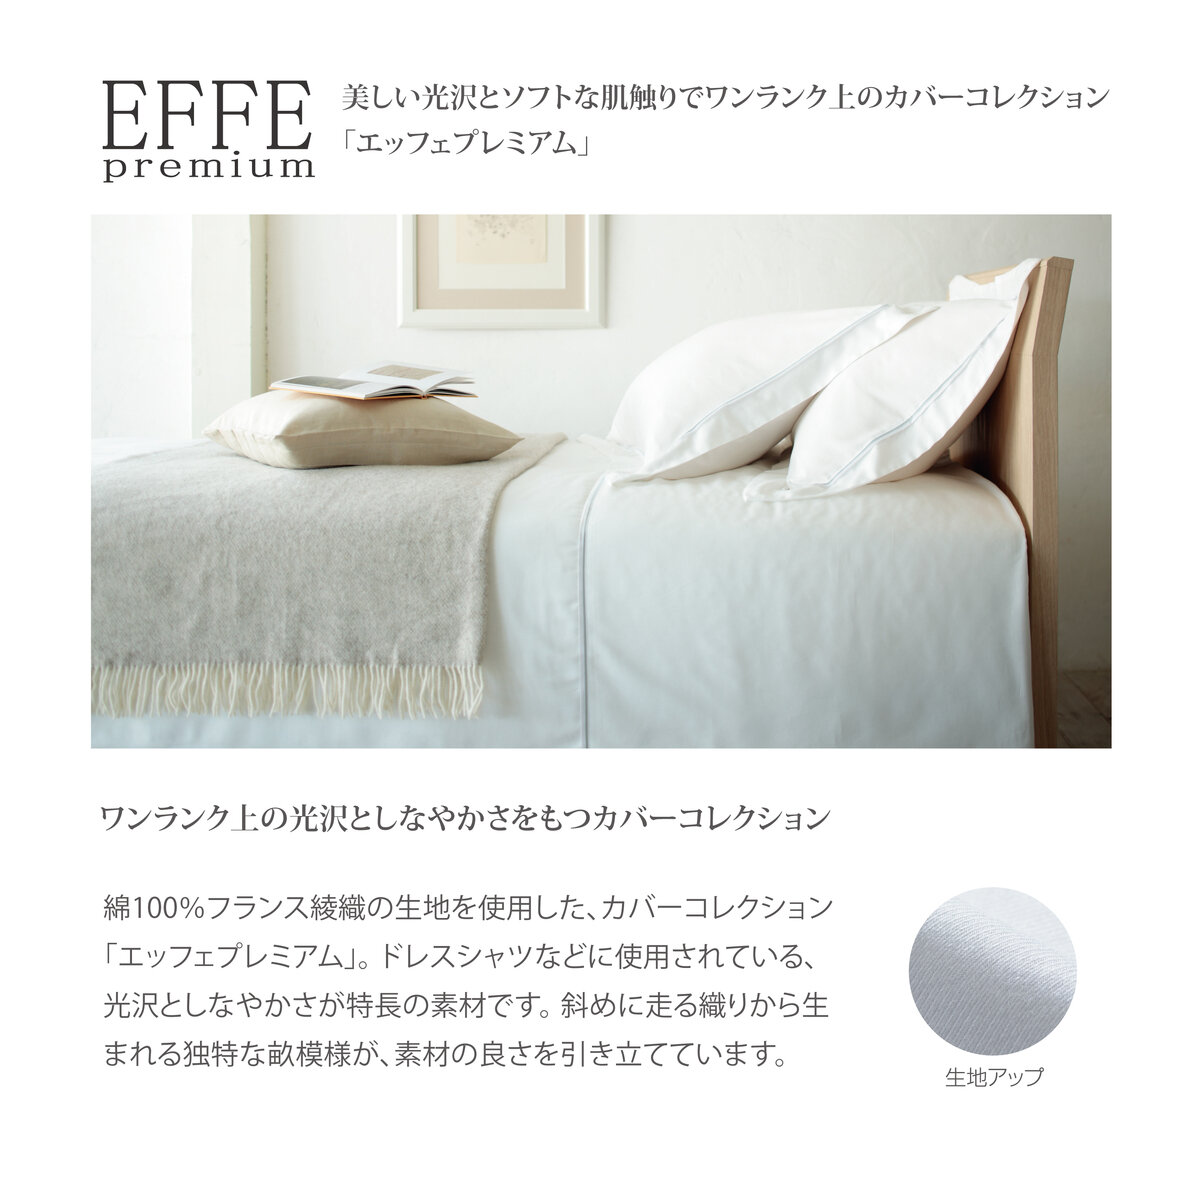 フランスベッド セミダブル マットレス LT-7000α ハード (ベッドパッドとシーツ2枚付き）